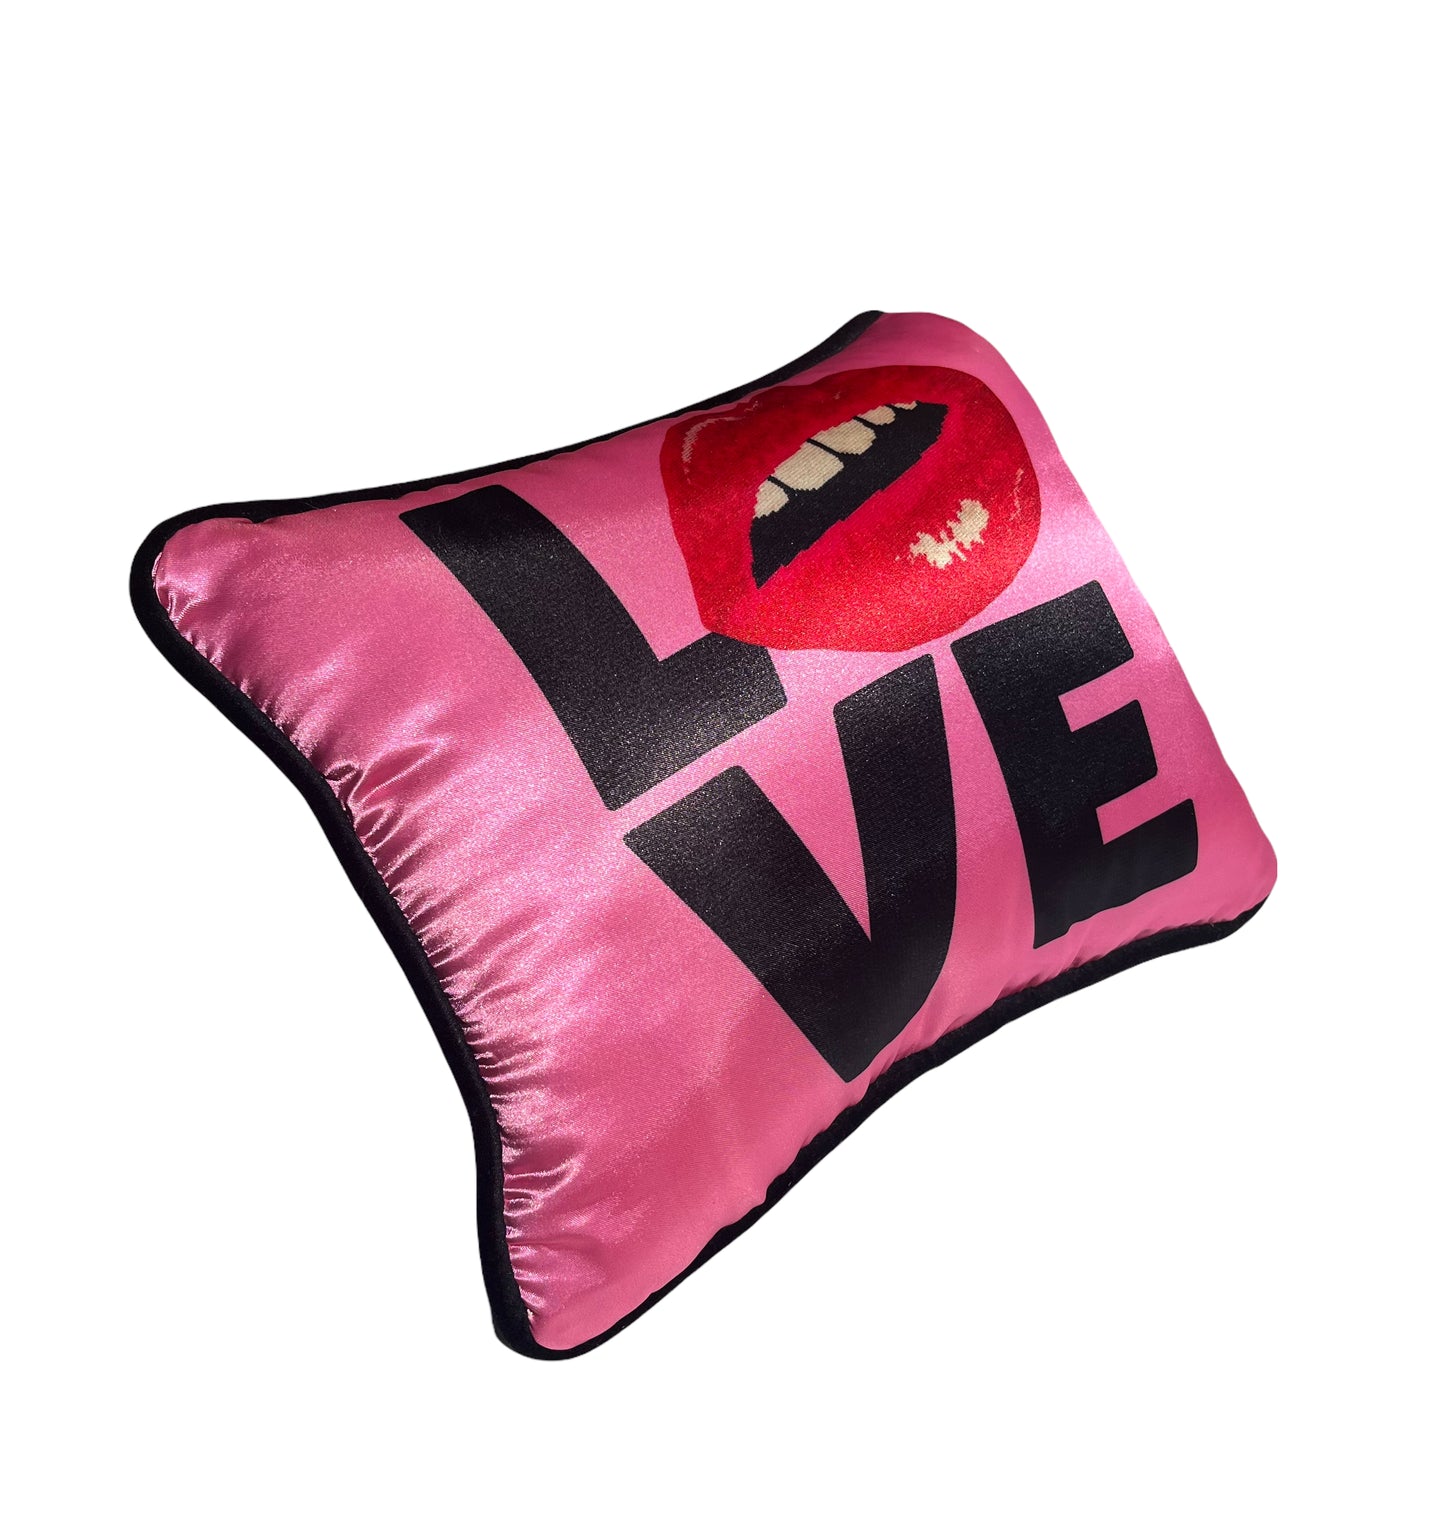 pop art pink satin LOVE kiss me pillow